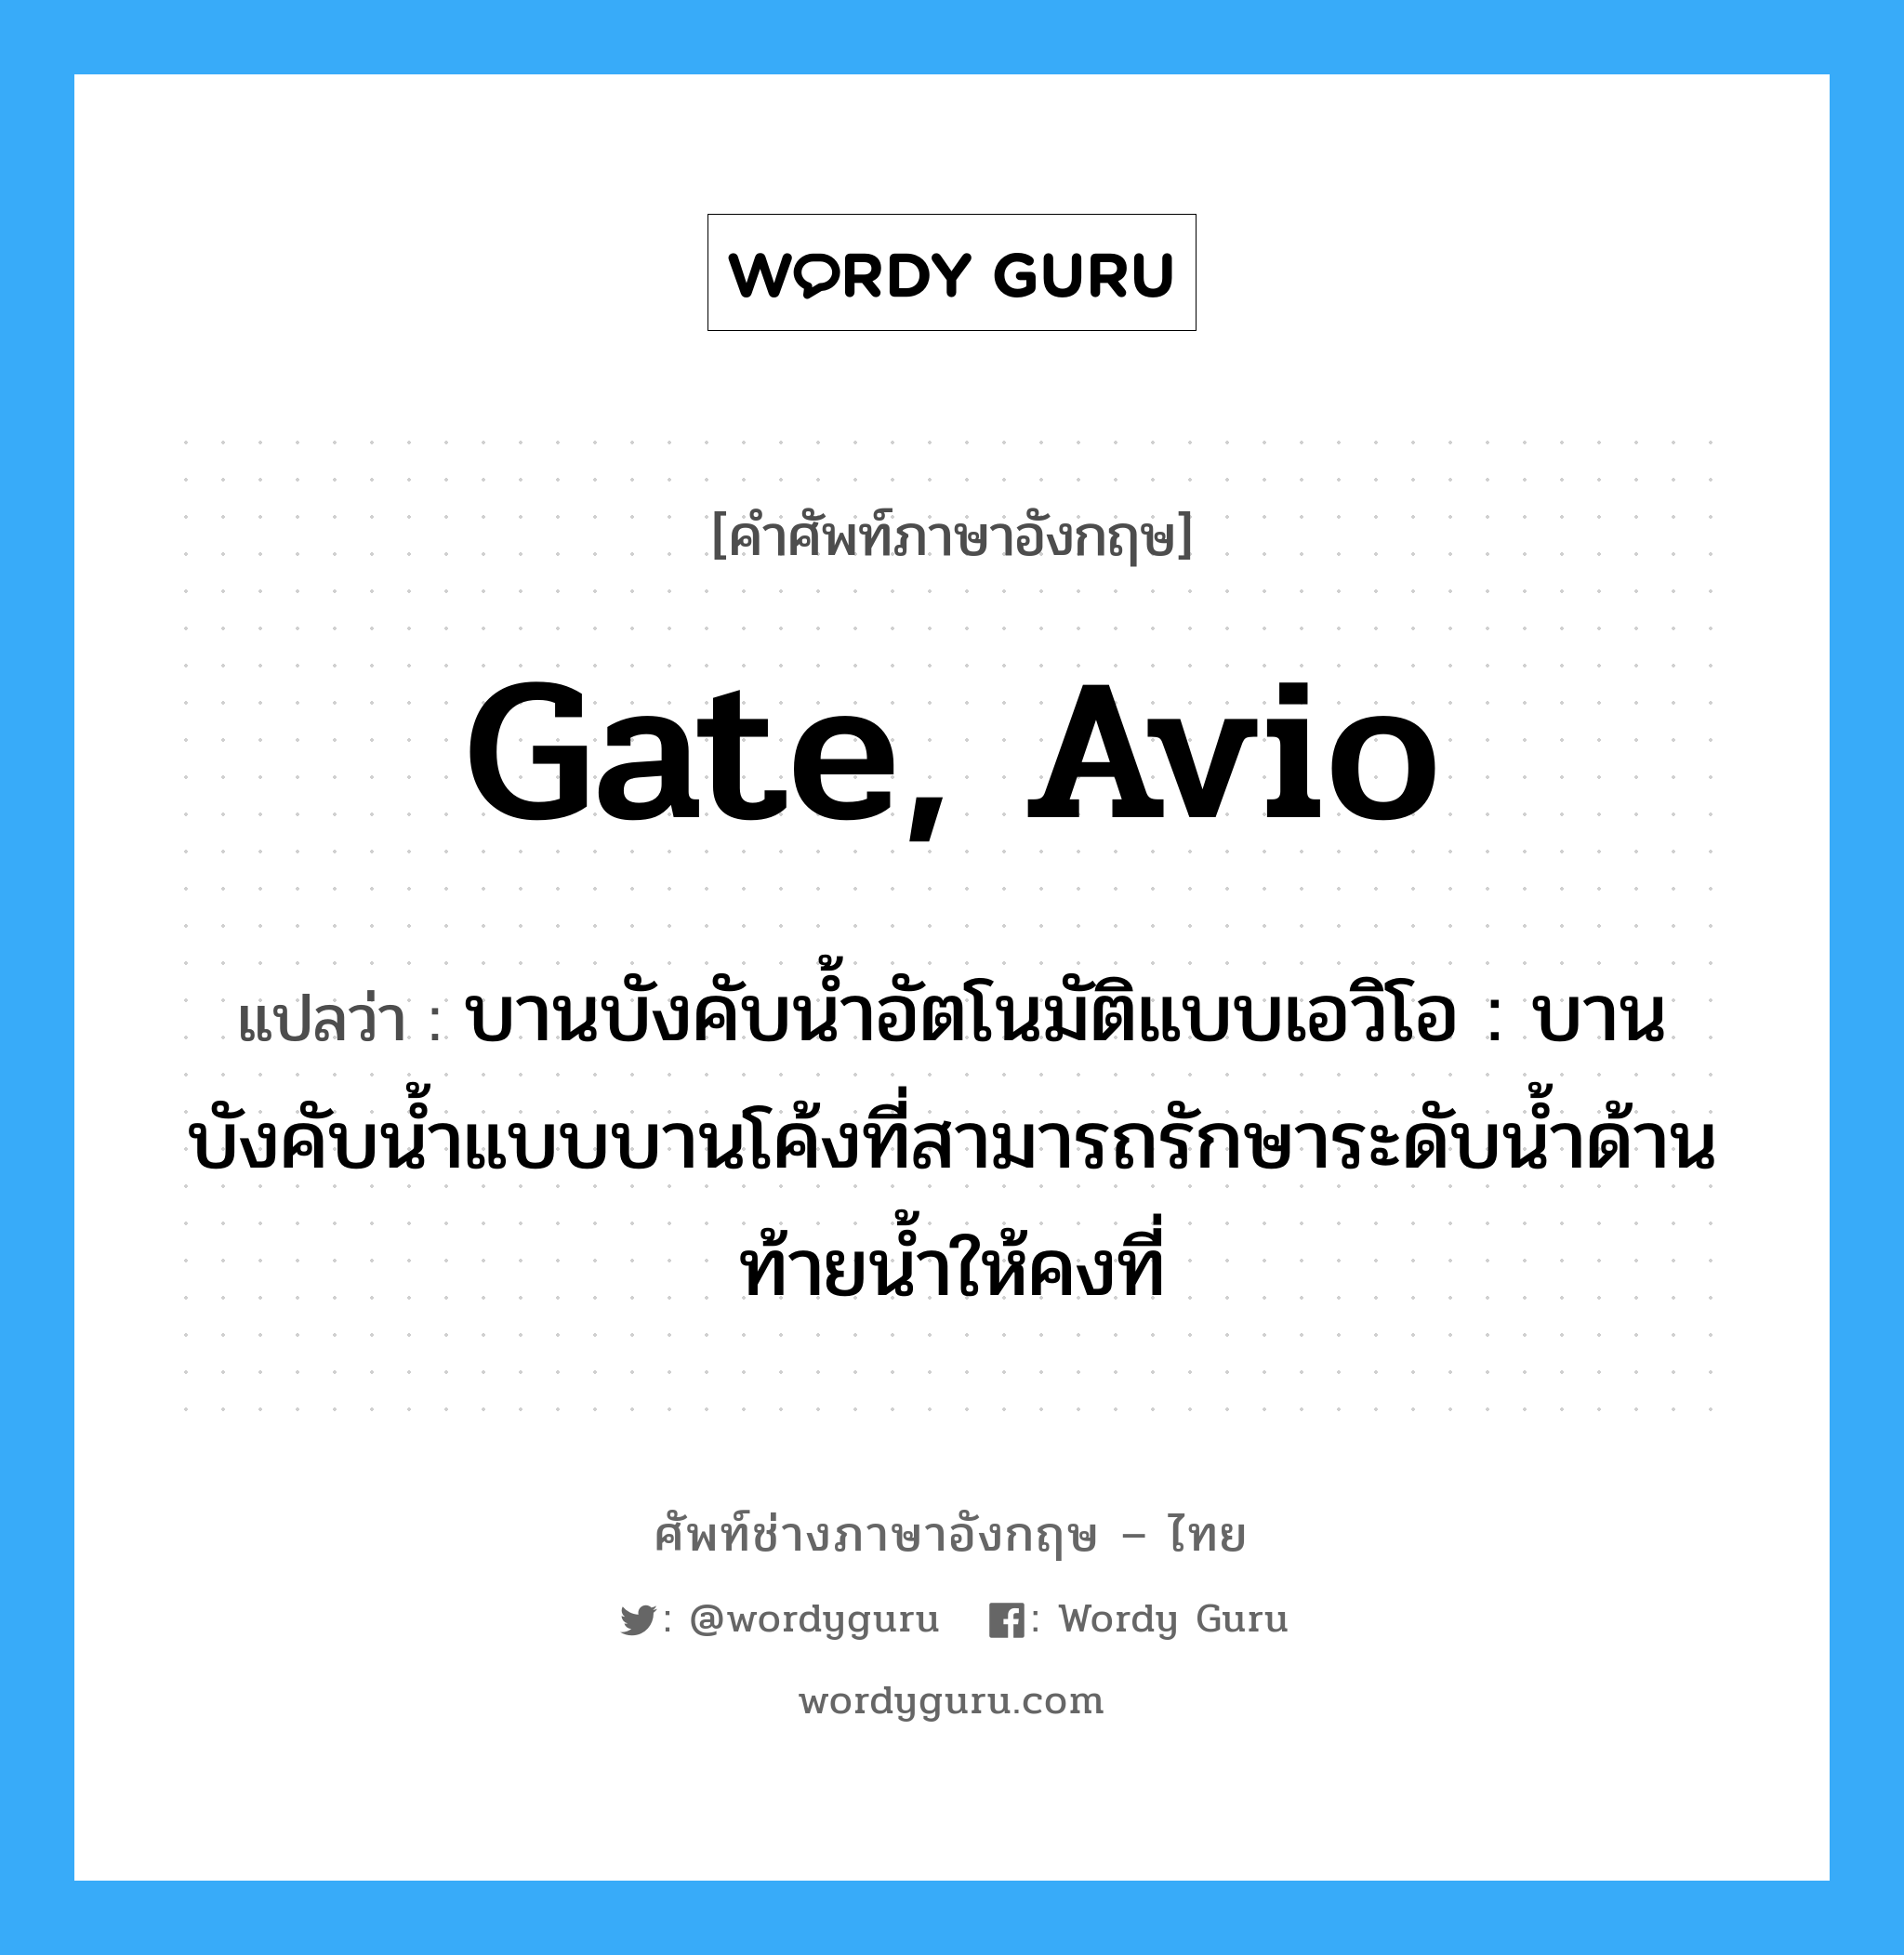 gate, Avio แปลว่า?, คำศัพท์ช่างภาษาอังกฤษ - ไทย gate, Avio คำศัพท์ภาษาอังกฤษ gate, Avio แปลว่า บานบังคับน้ำอัตโนมัติแบบเอวิโอ : บานบังคับน้ำแบบบานโค้งที่สามารถรักษาระดับน้ำด้านท้ายน้ำให้คงที่